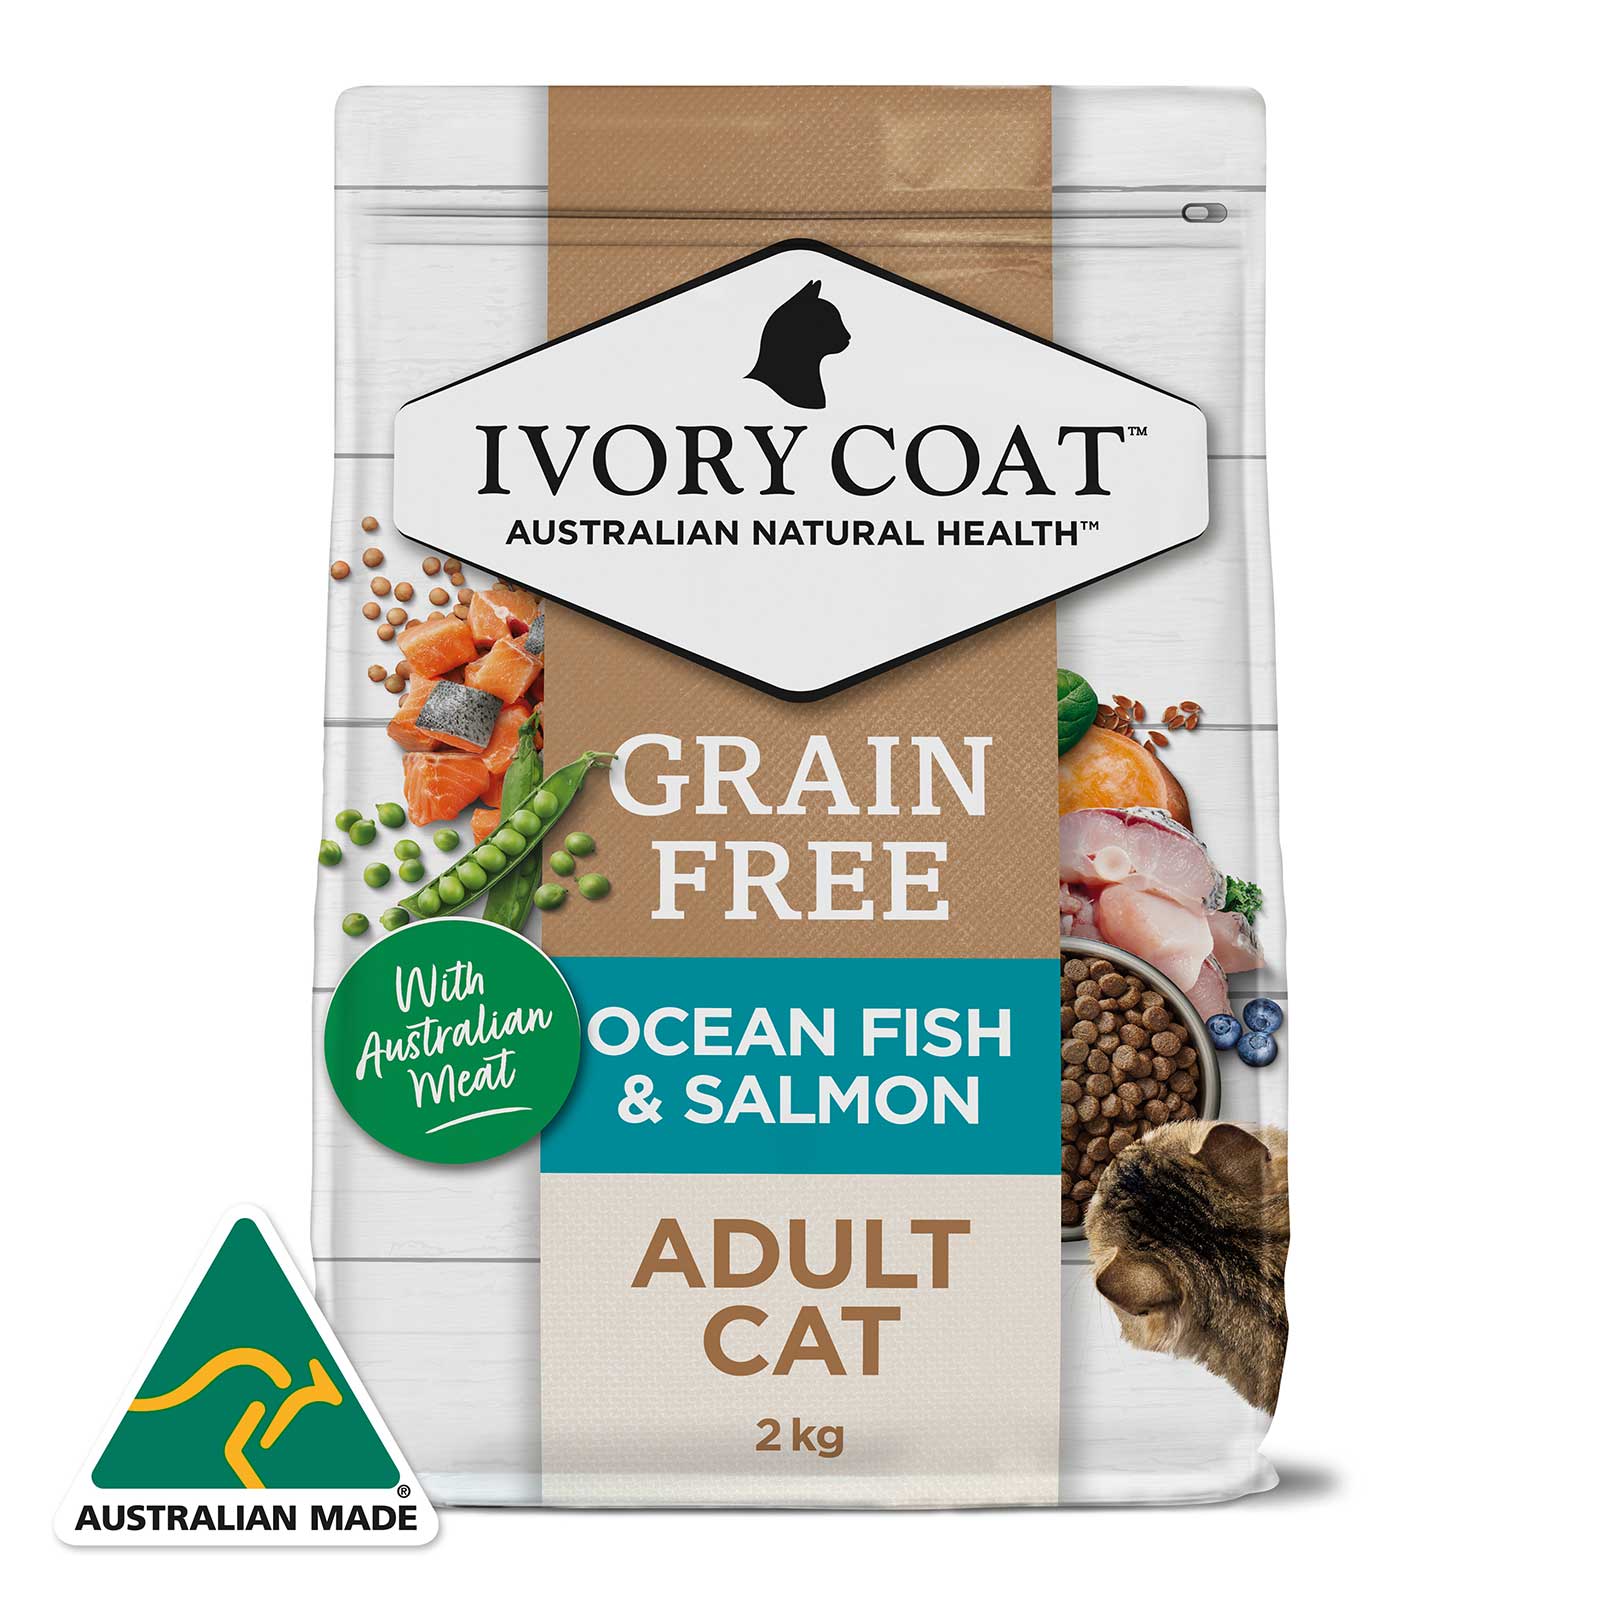 Ivory Coat Grain Free Cat Food Adult Ocean Fish & Salmon